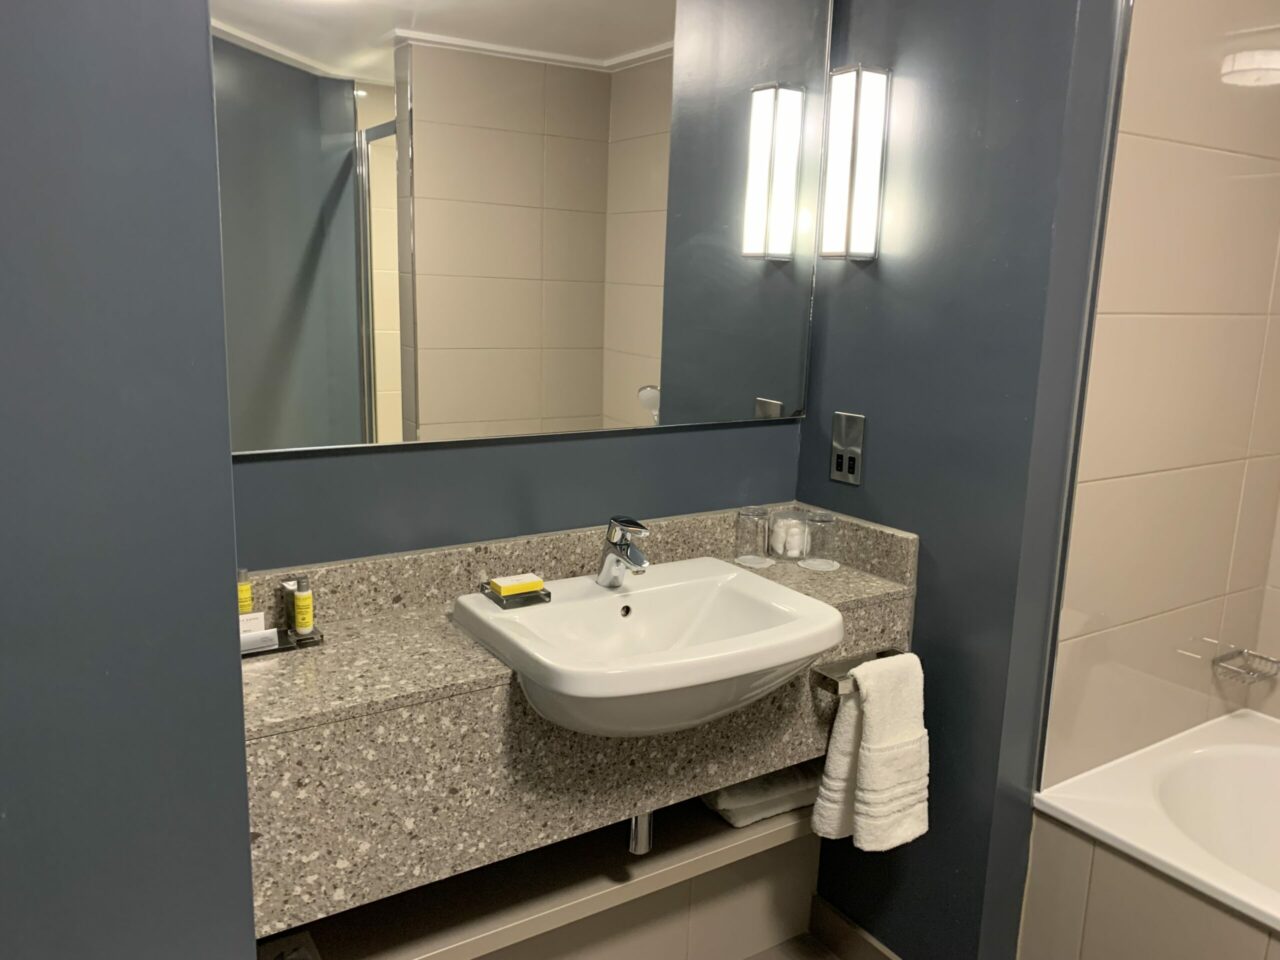 Marriott Royal Hotel Bristol review toilet room